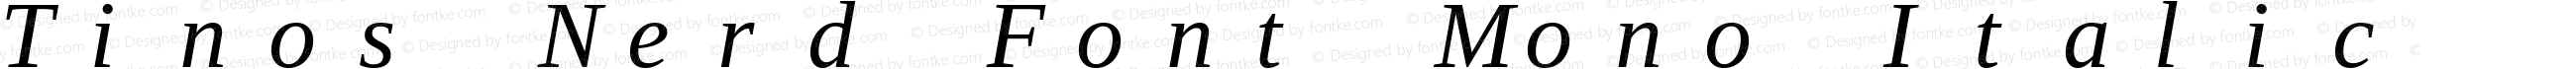 Tinos Italic Nerd Font Complete Mono